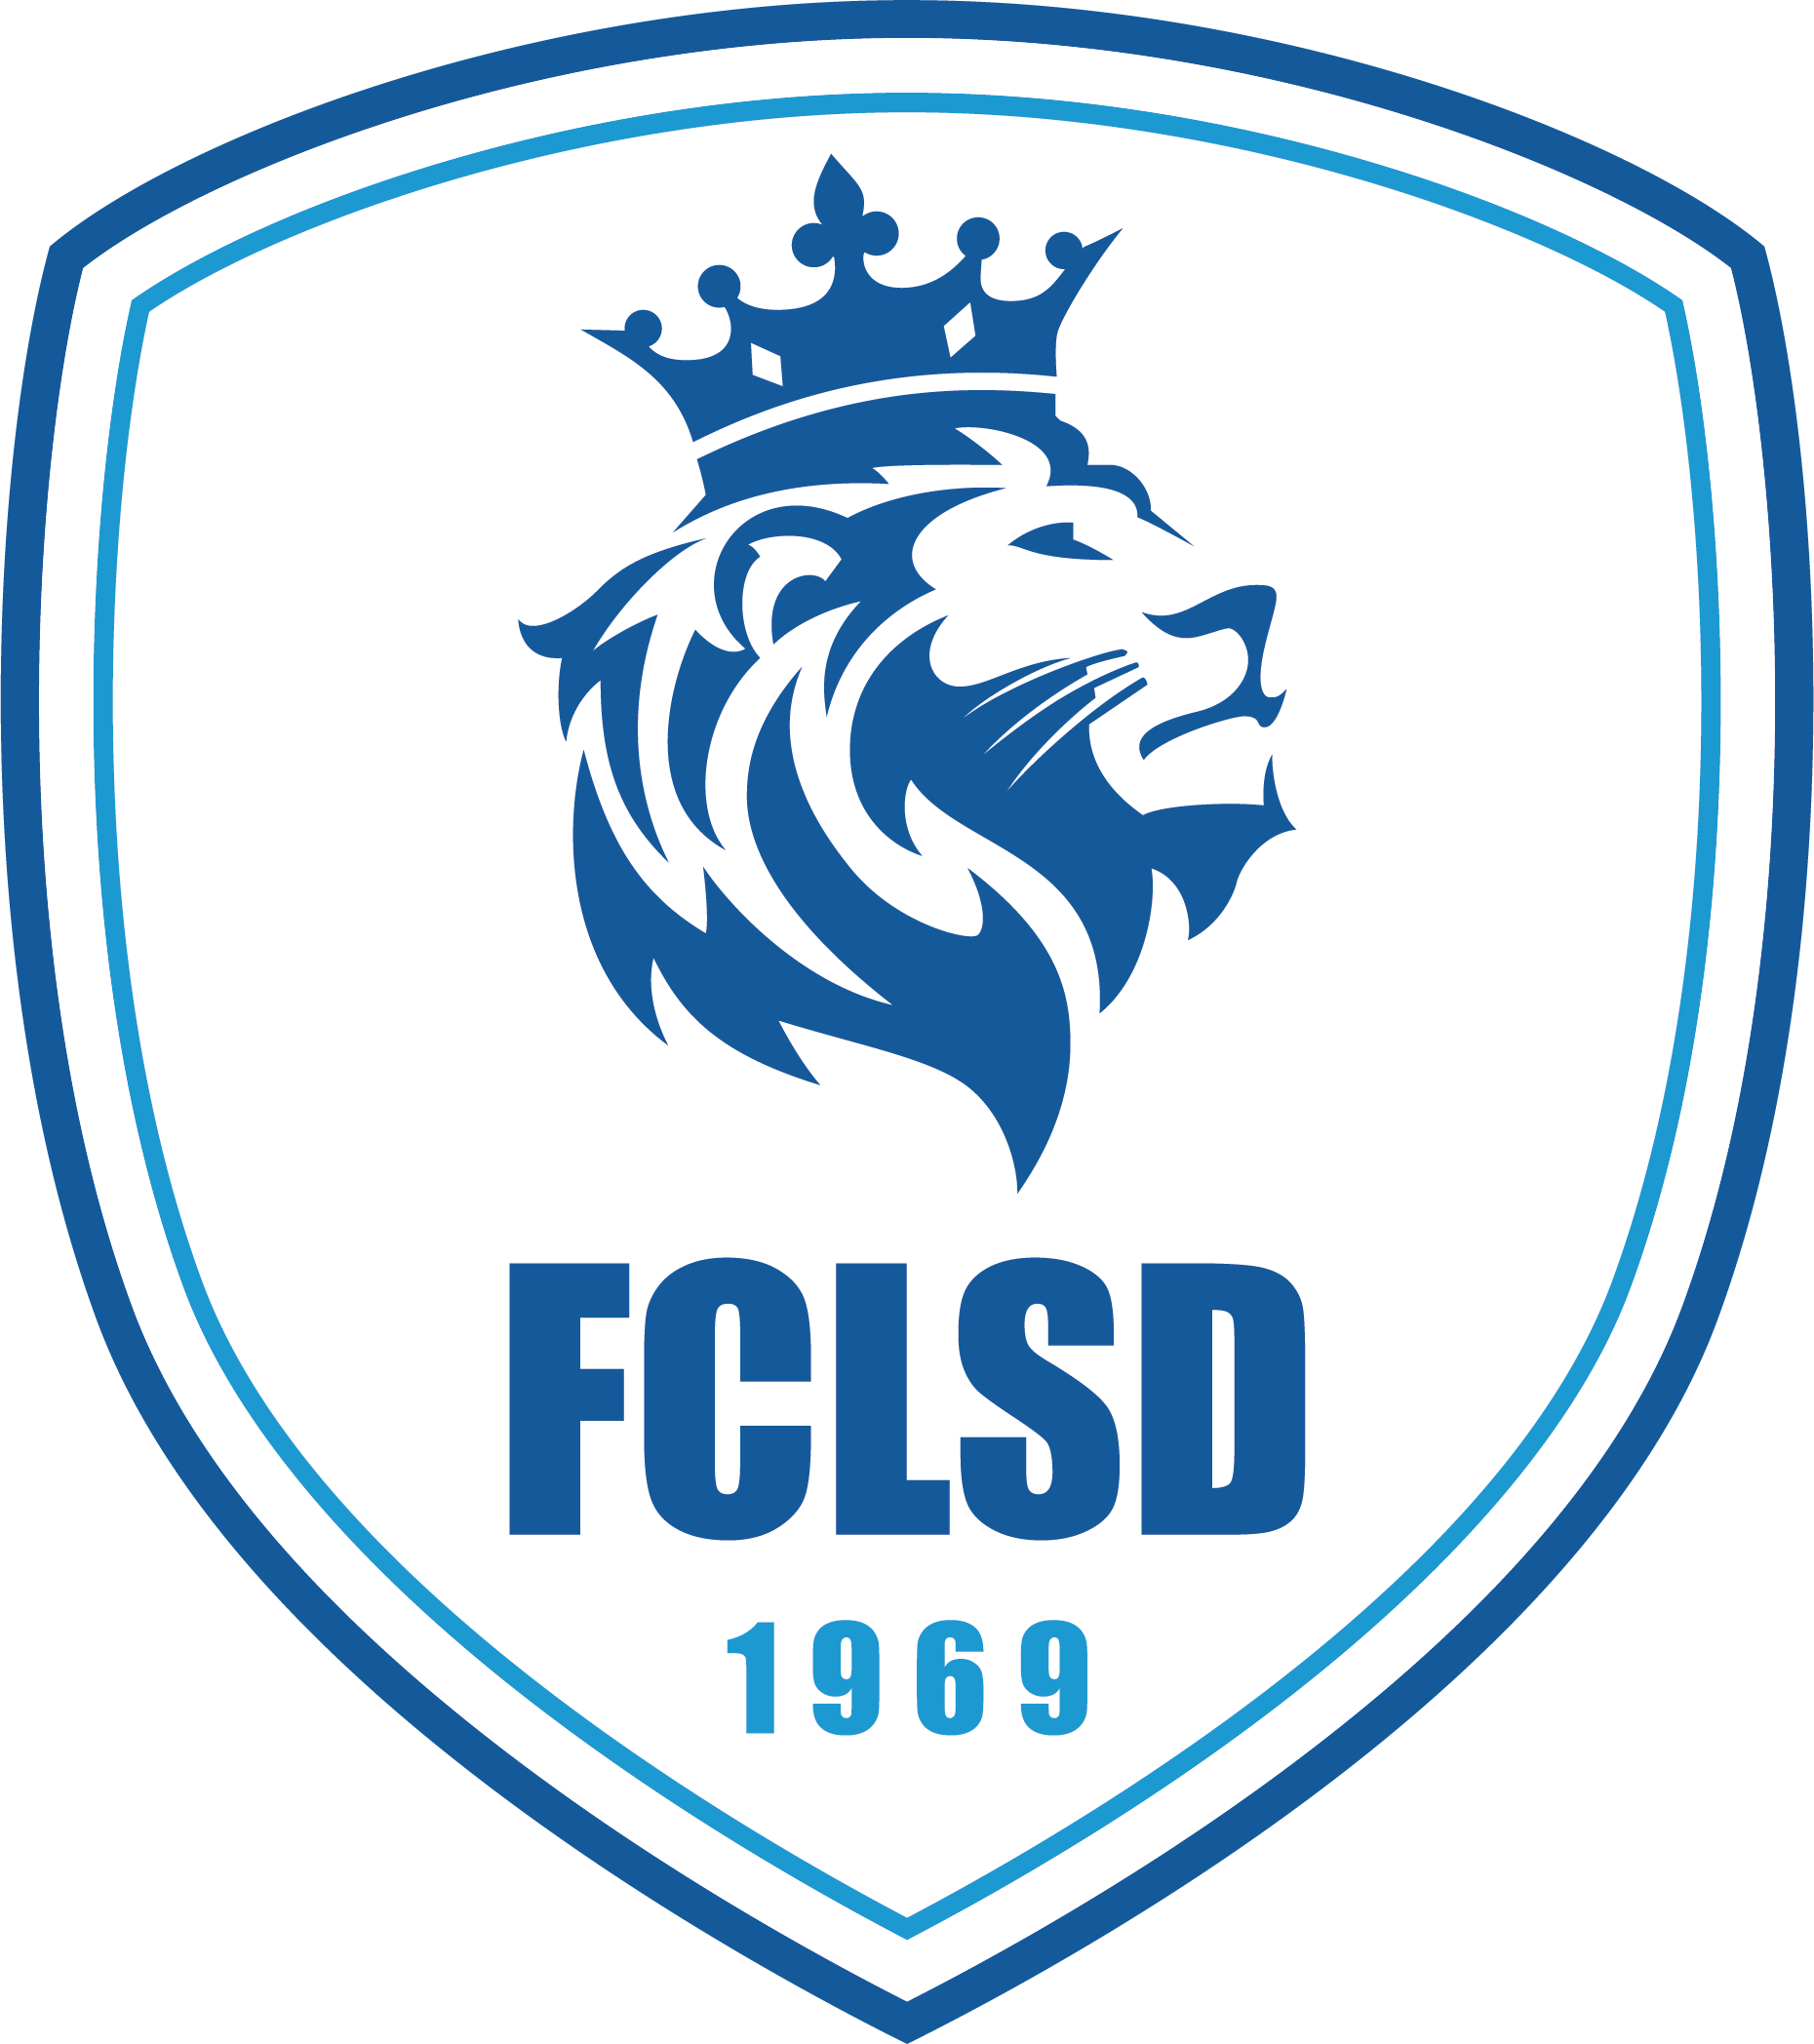 Football Club de Limonest Saint-Didier